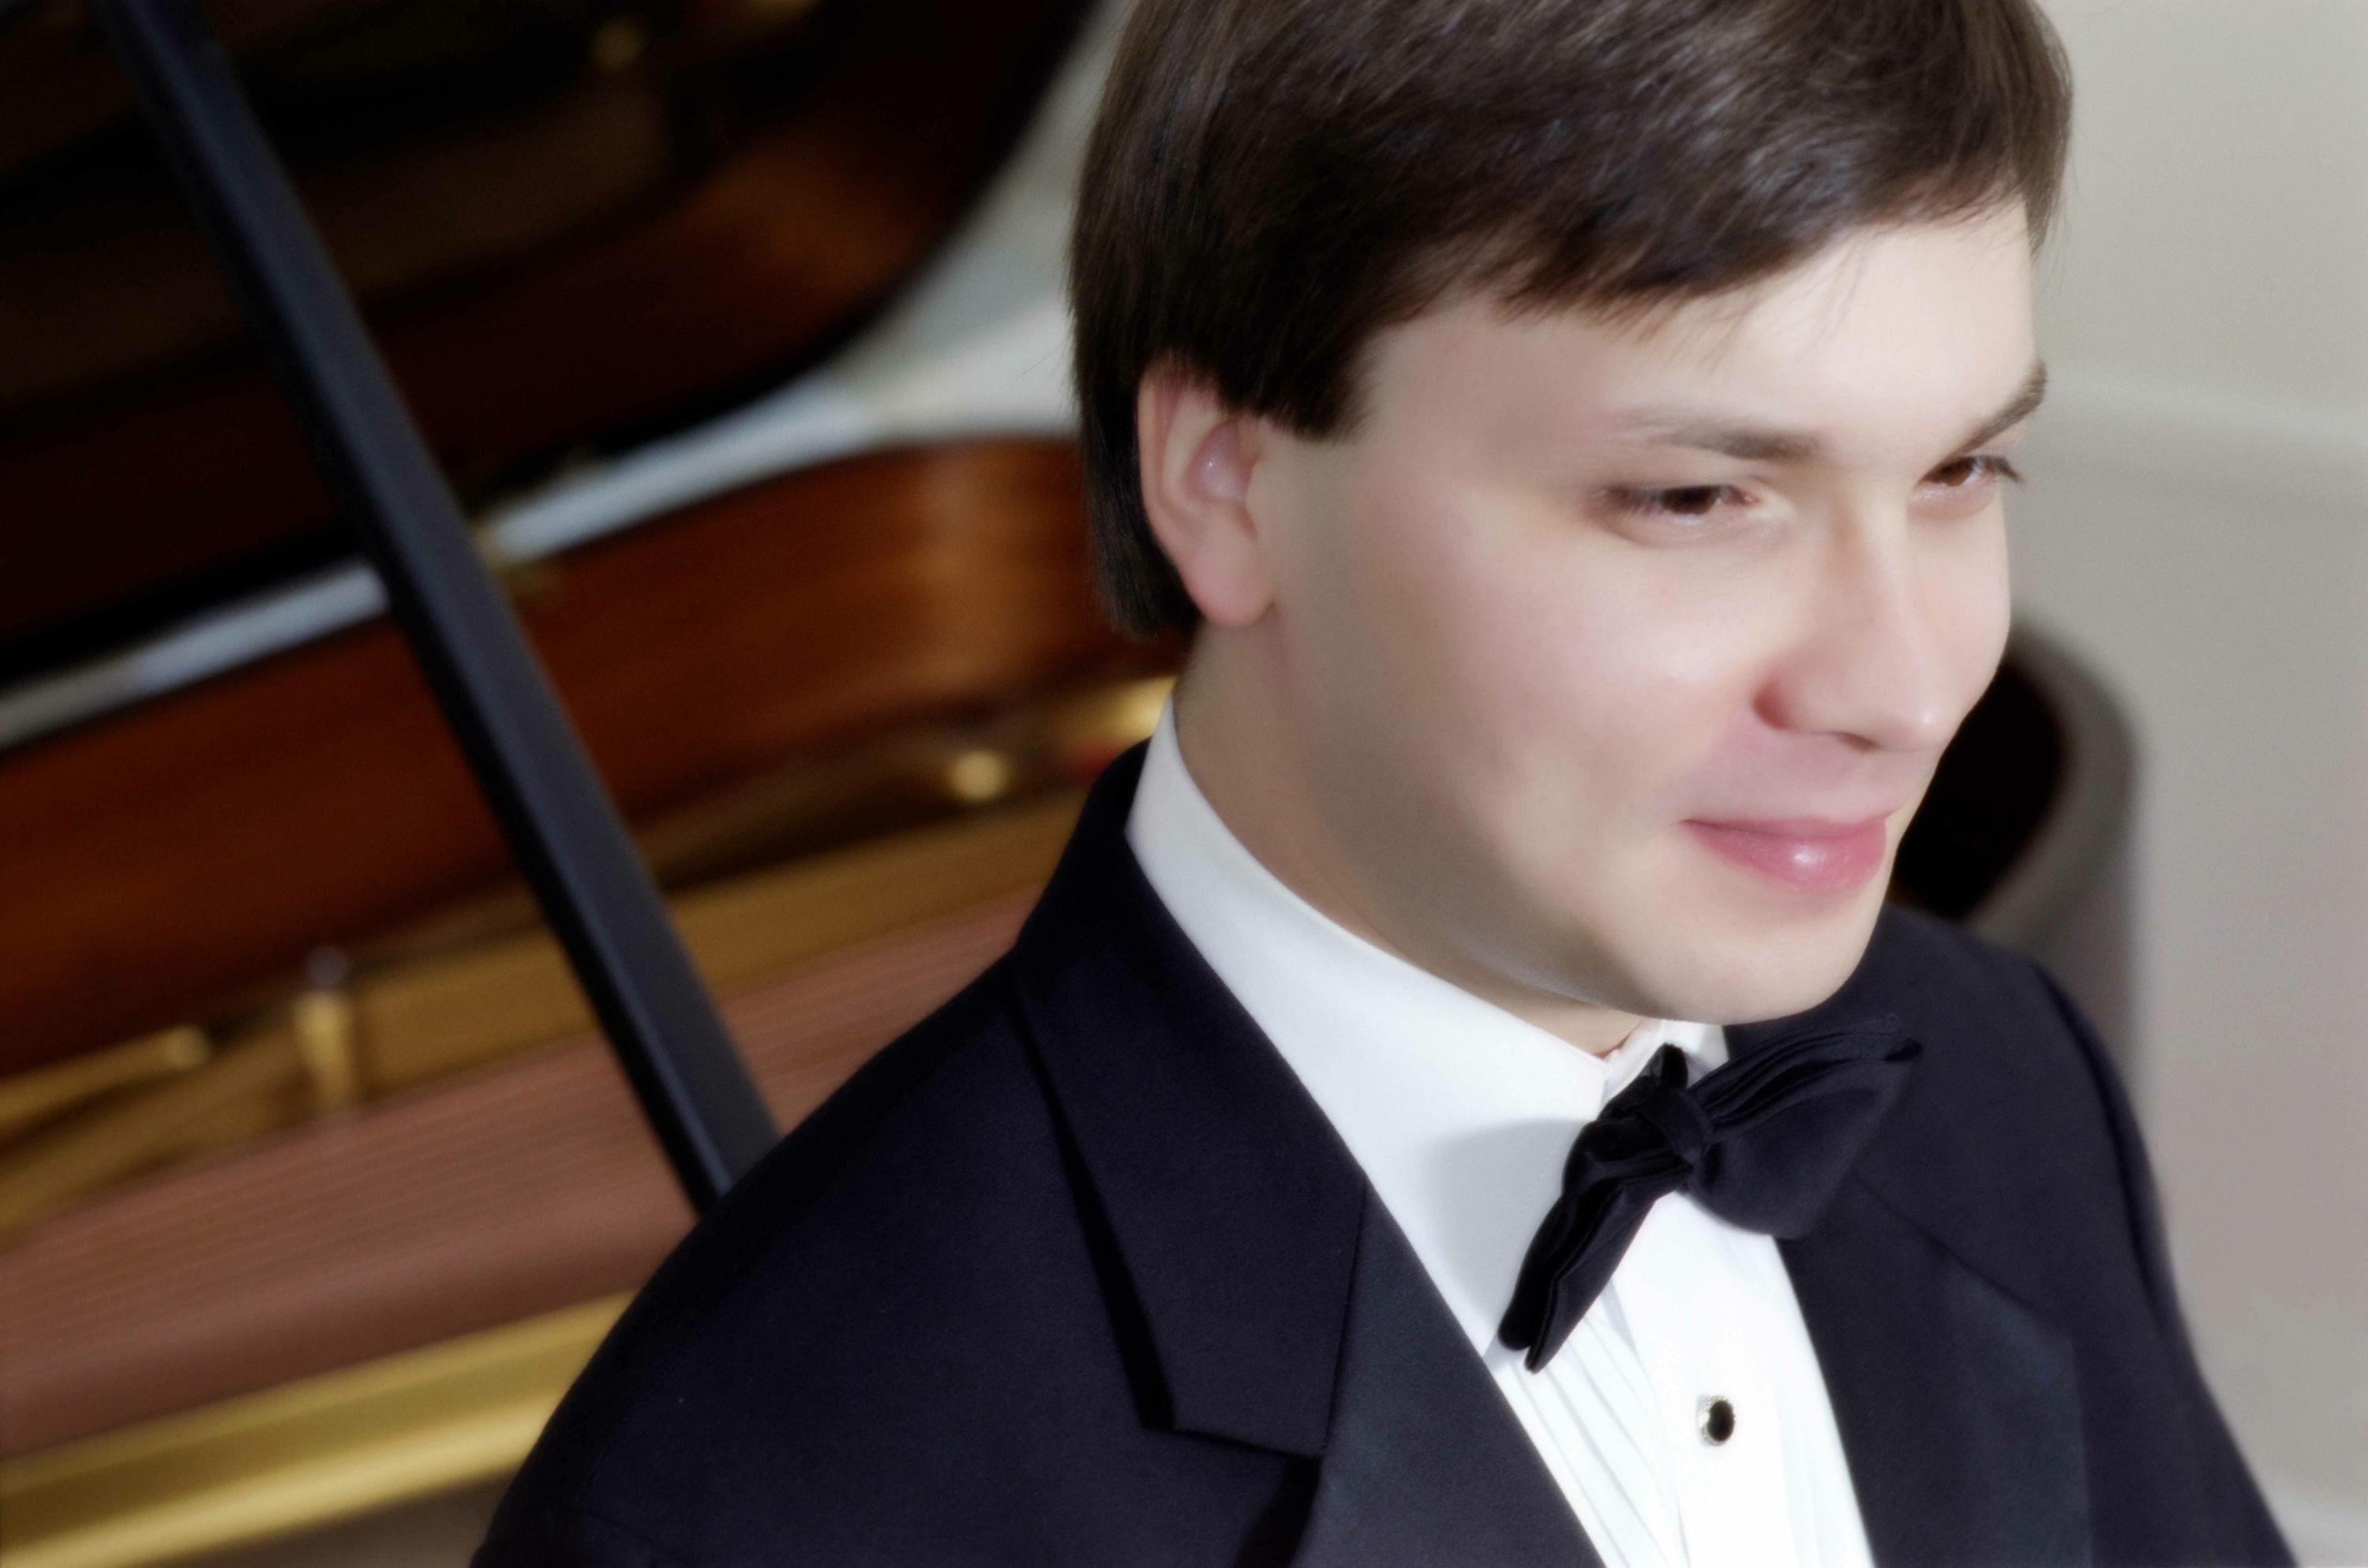 Maestro Alexei e Piano Branco